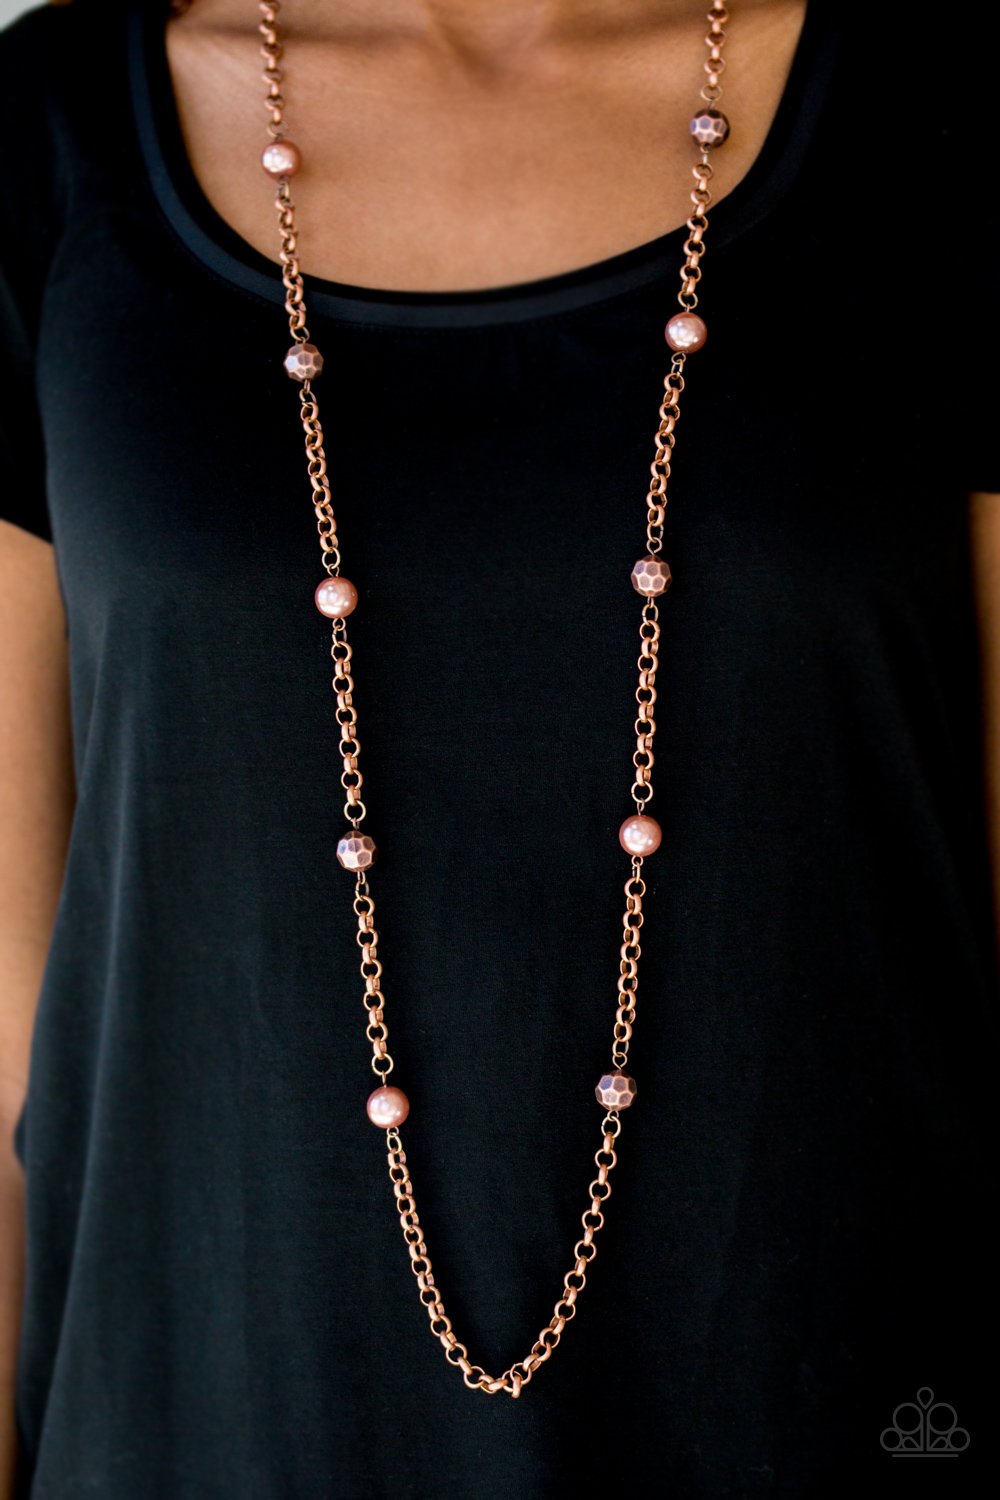 Showroom Shimmer - copper necklace